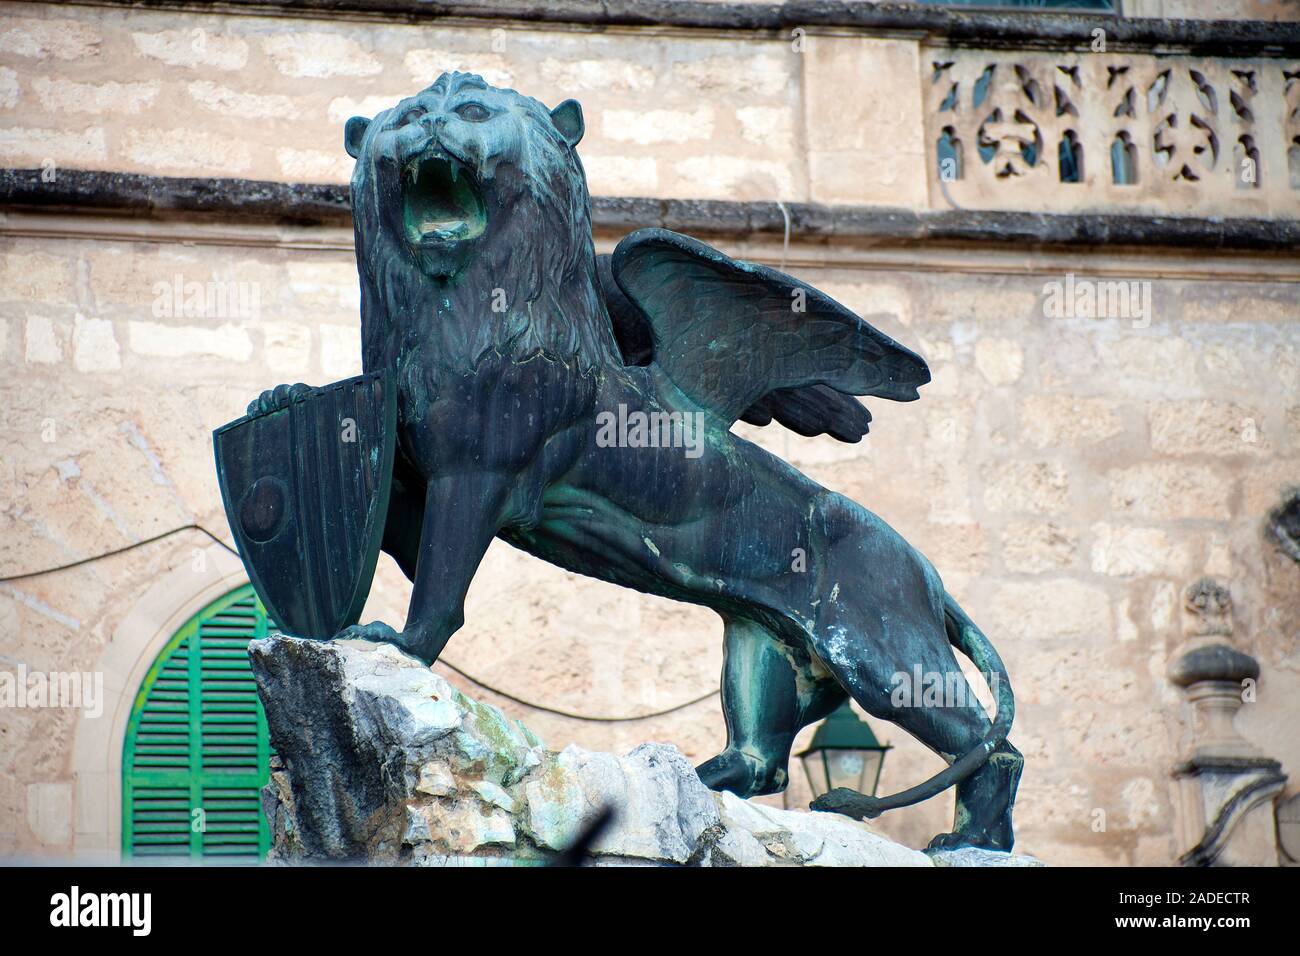 Famoso leone alato di San Marco, il leone di bronzo del santo patrono e un simbolo di potere, vedere lo stemma della città sotto la sua zampa, Sineu, Mallorca, Spagna Foto Stock